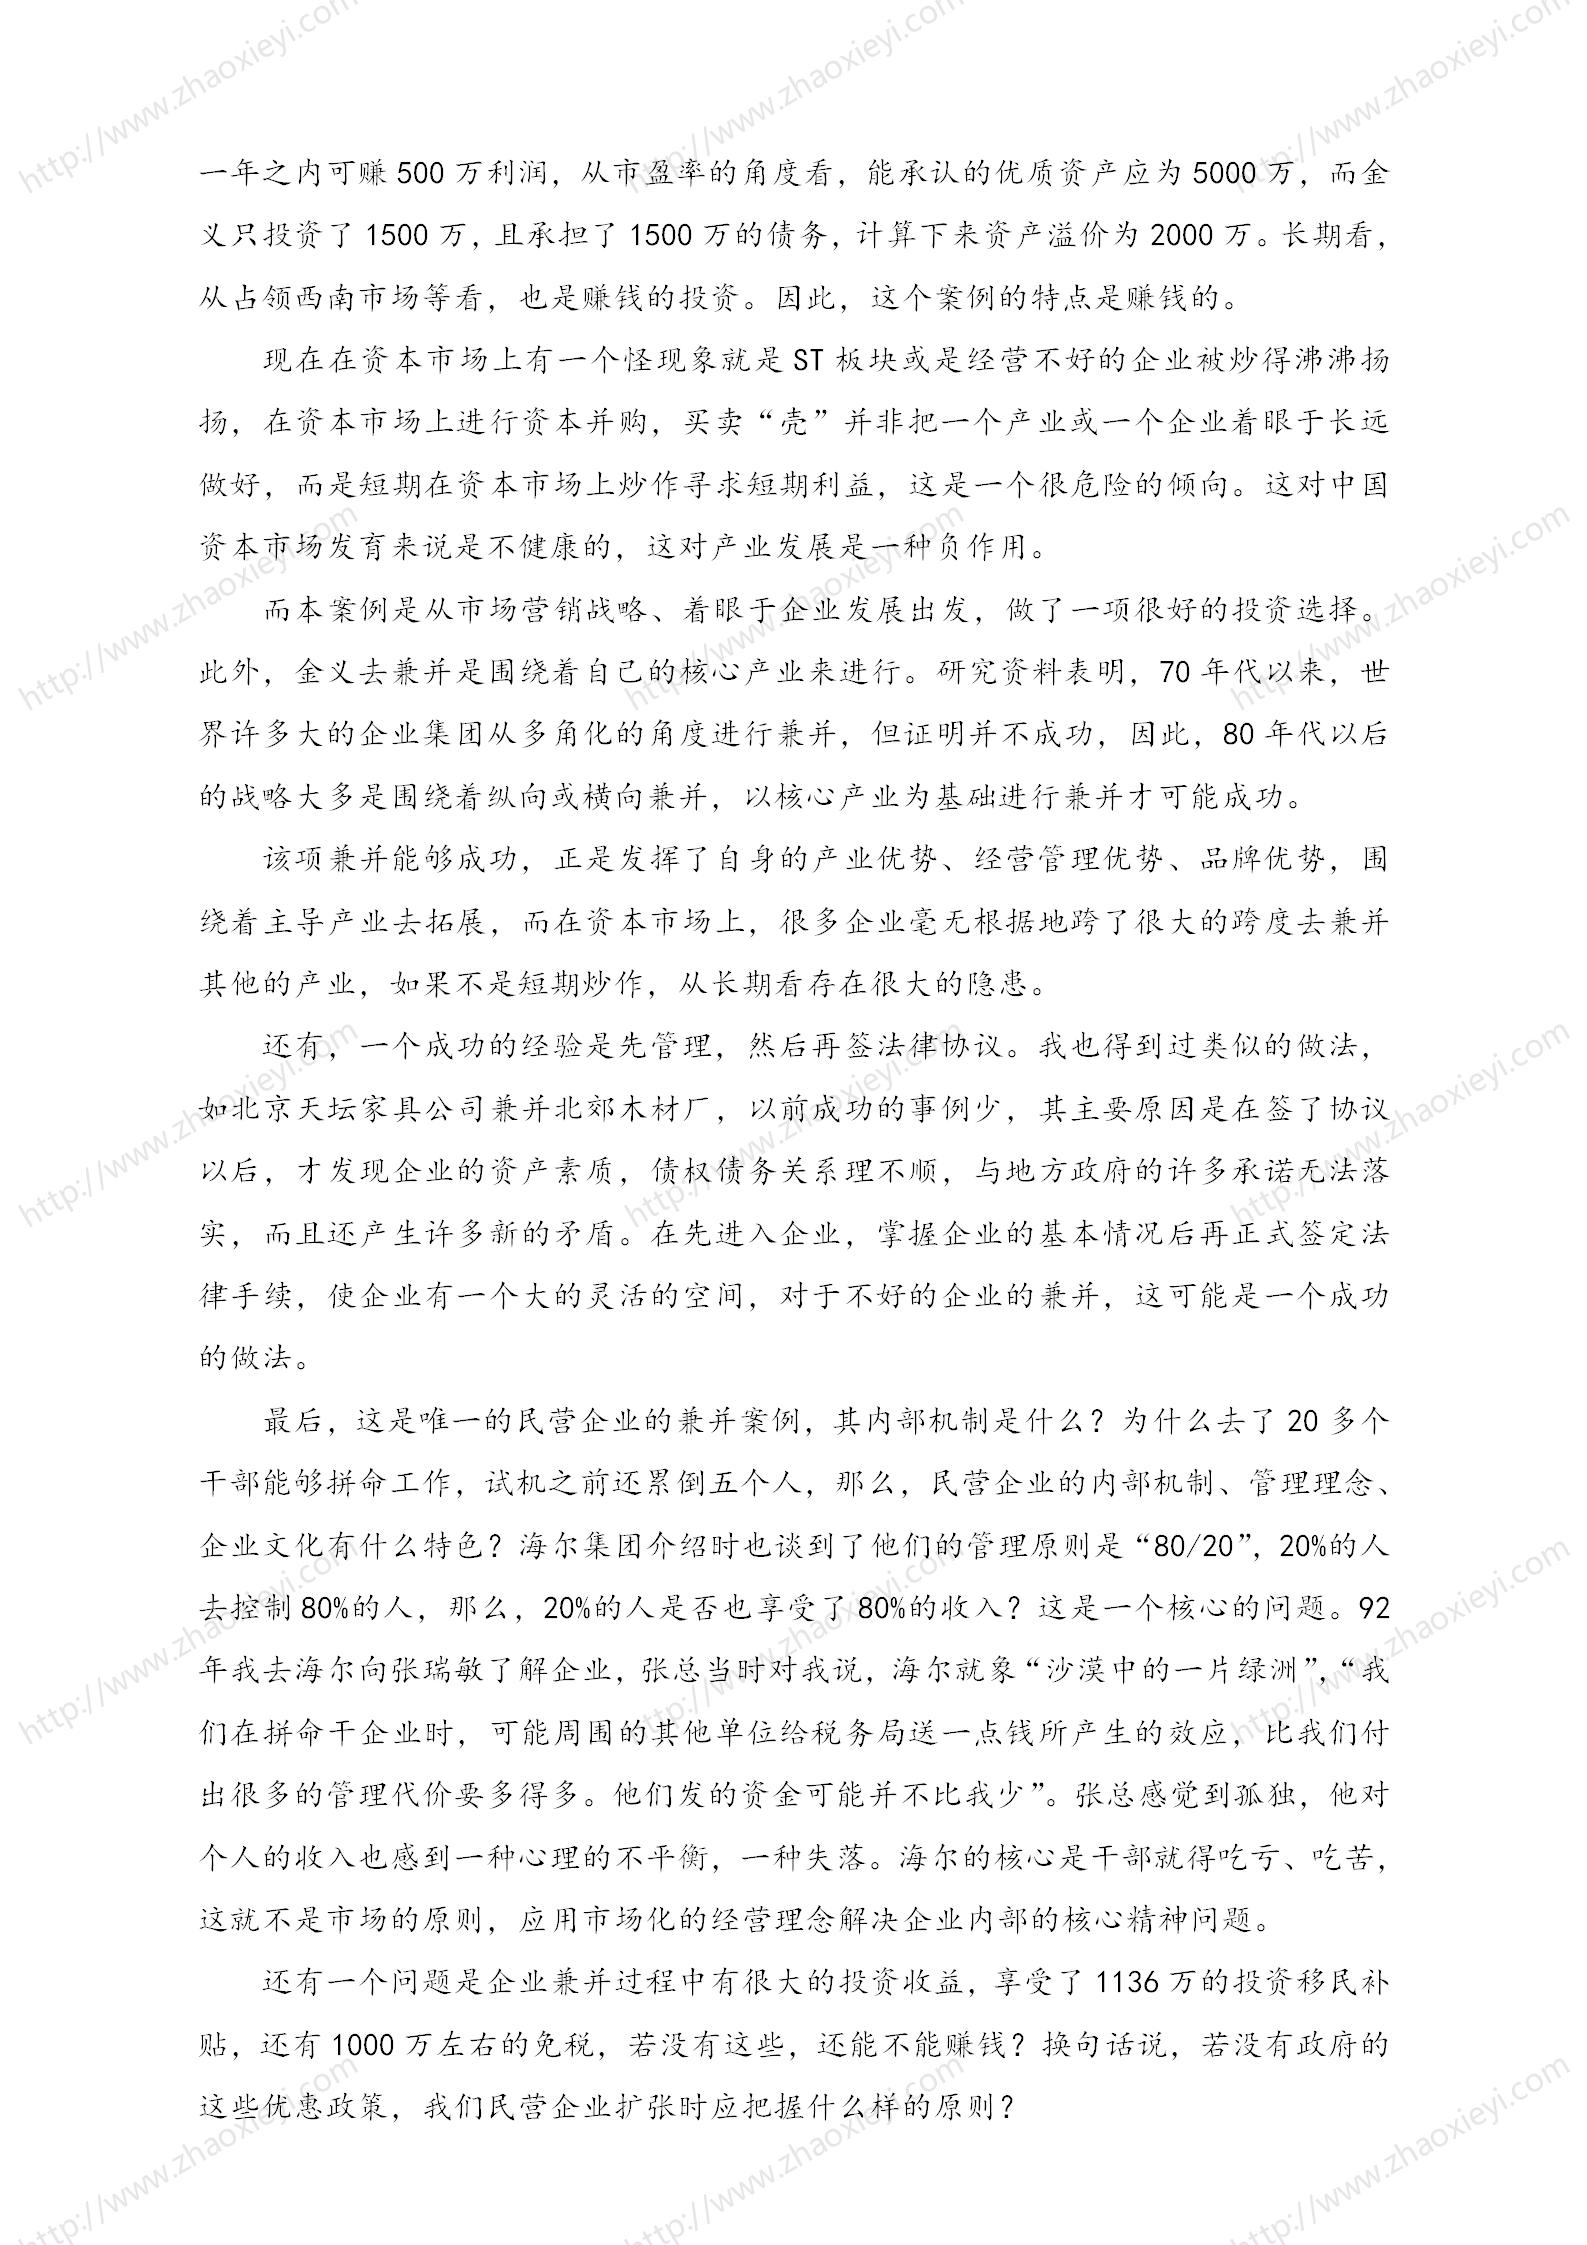 中国企业并购经典案例_138.jpg